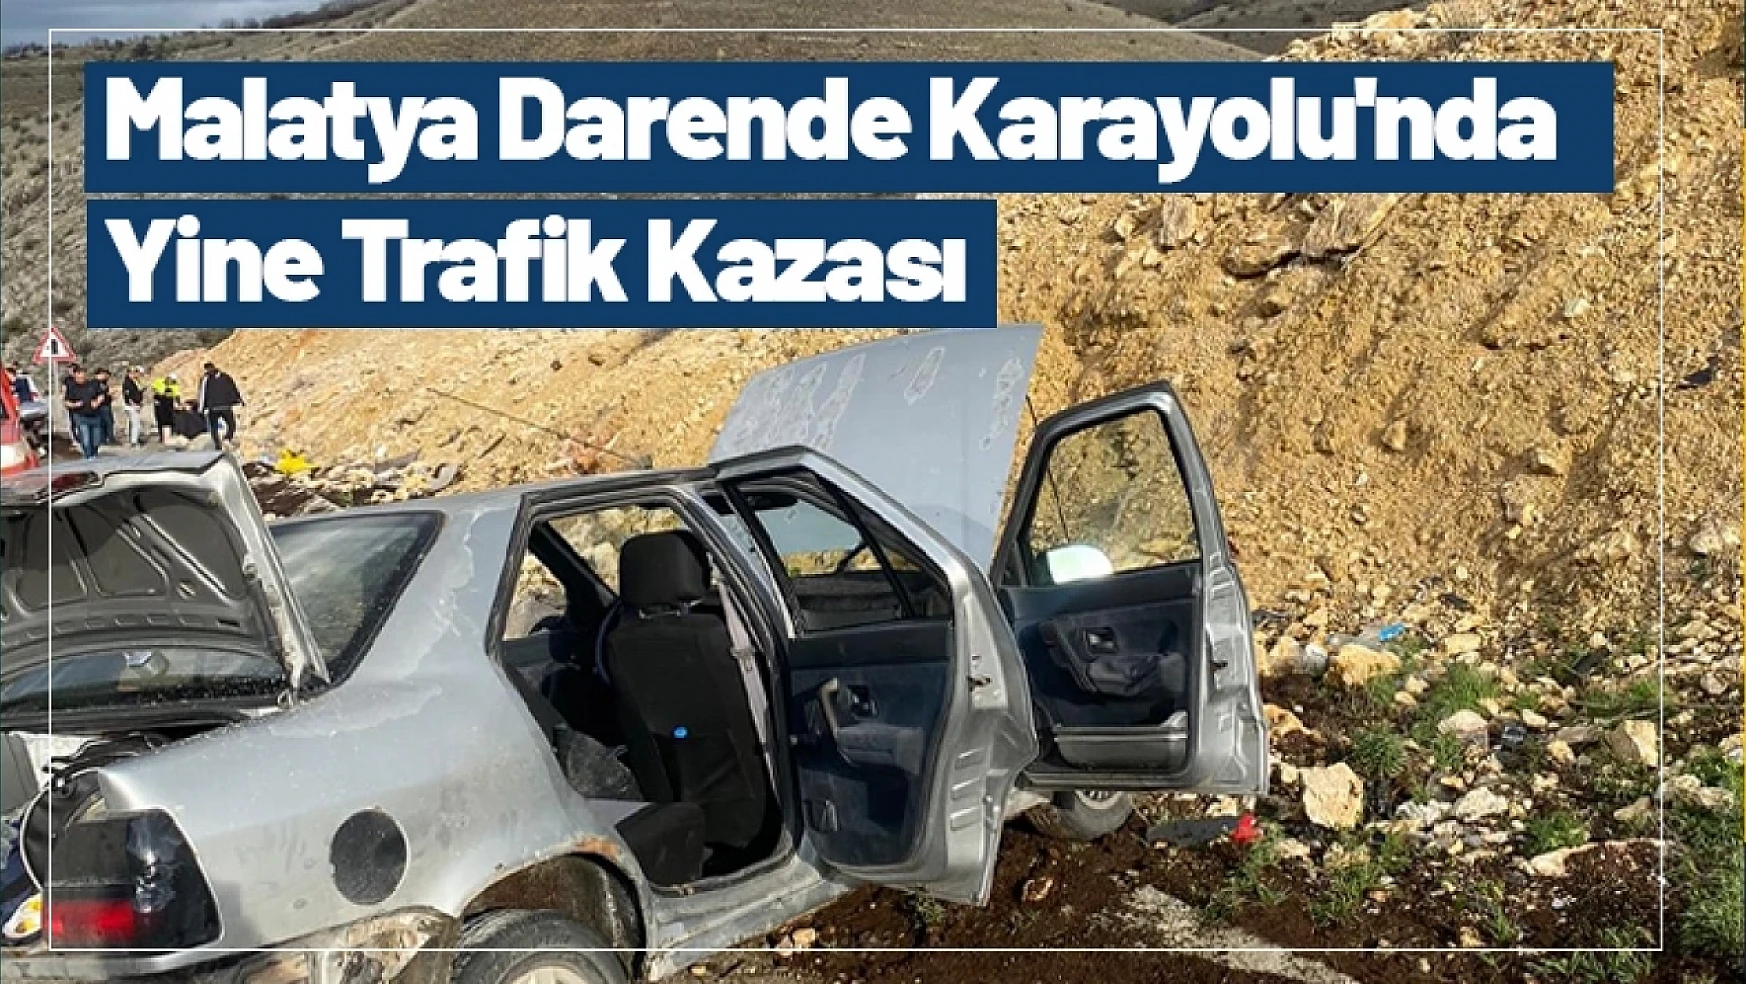 Malatya Darende Karayolu'nda Yine Trafik Kazası